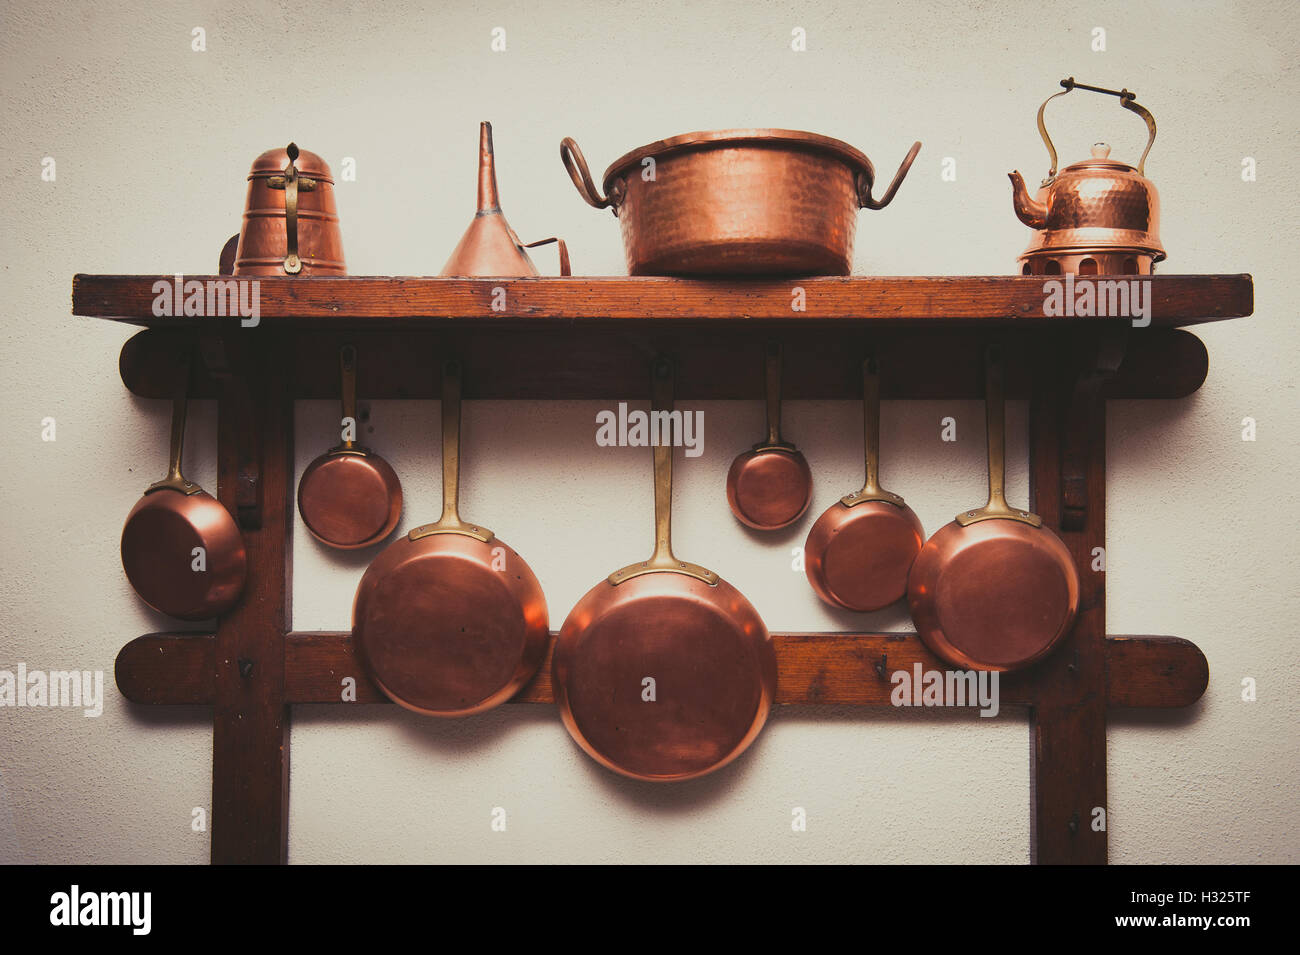 Utensilios de cocina blanco y cobre, juego de utensilios de cocina de cobre  de 18 piezas, incluye soporte para utensilios de cobre, tazas y cucharas